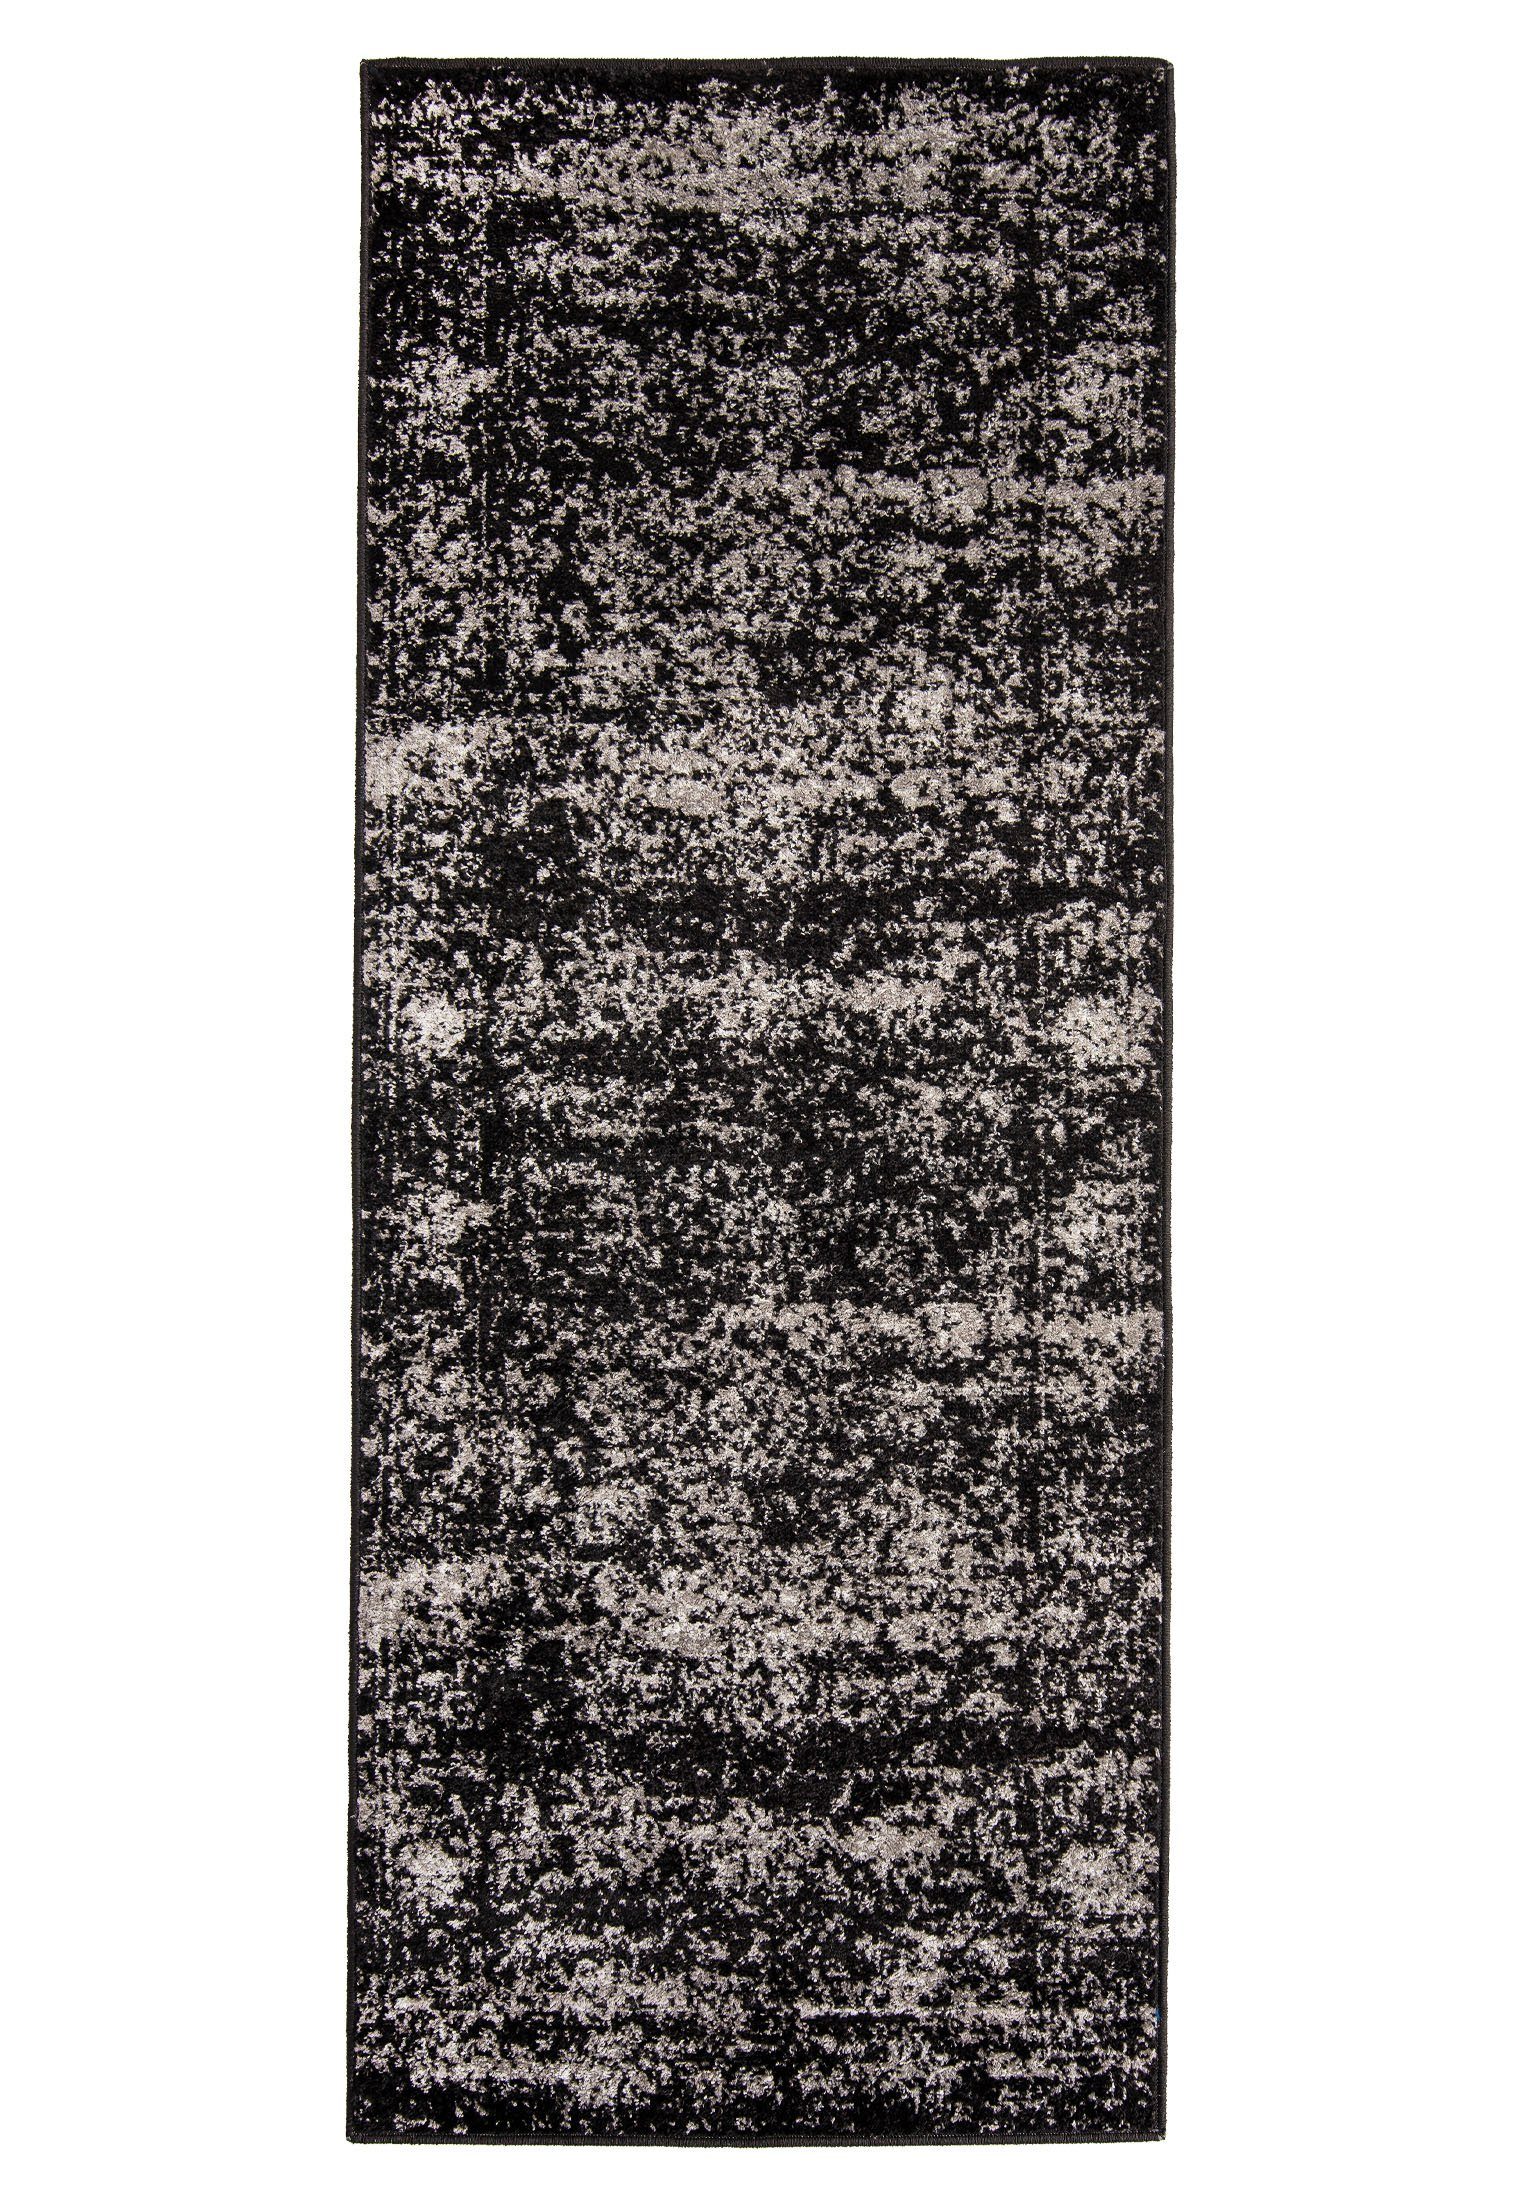 Designteppich Vintage Teppich für Wohnzimmer - Vintage Look - Schwarz, Mazovia, 60 x 200 cm, Vintage, Höhe 8 mm, Kurzflor - niedrige Florhöhe Schwarz / H182A